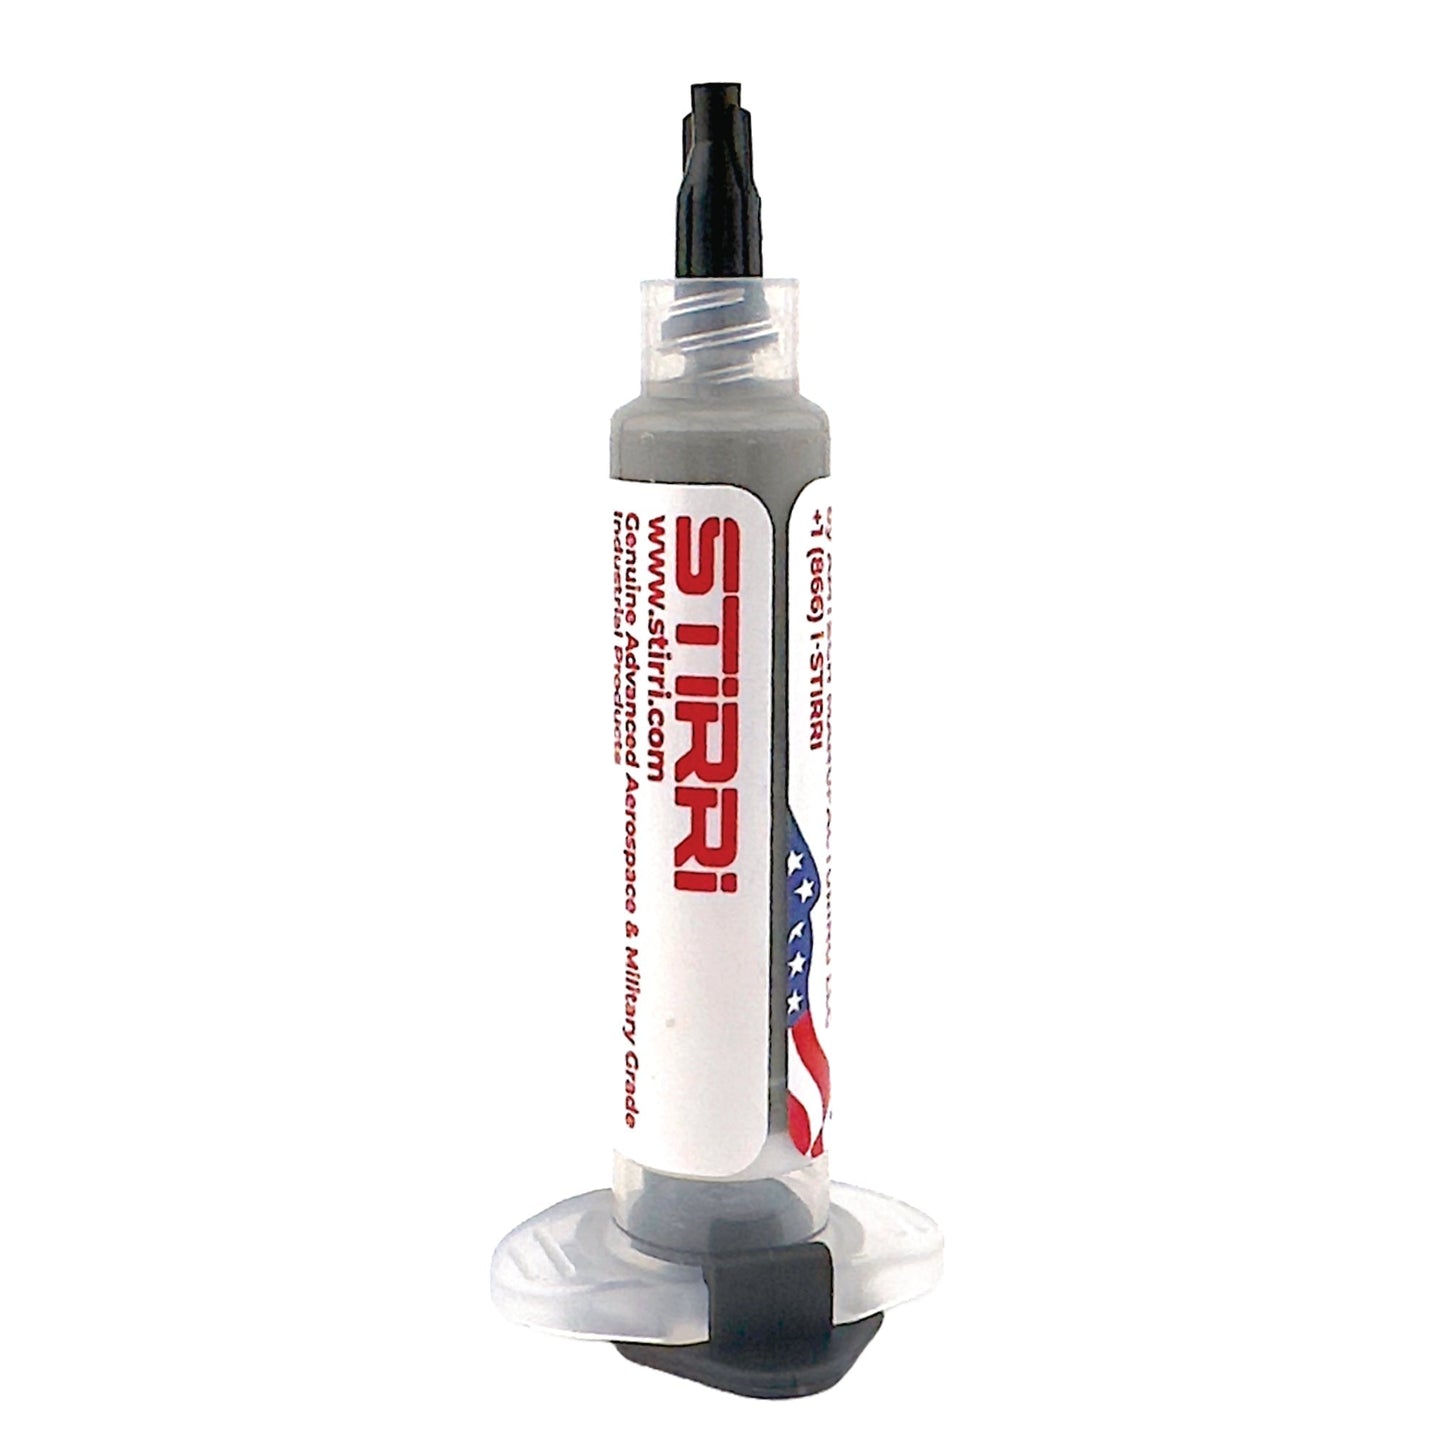 STIRRI-ASM-305 – Sn96,5Ag3,0Cu0,5 bleifrei, halogenfrei, no-clean-Lötpaste mit geringer Porenbildung für automatisierte Lötmaschinen, 3 % Silber SAC305 (ROL0)